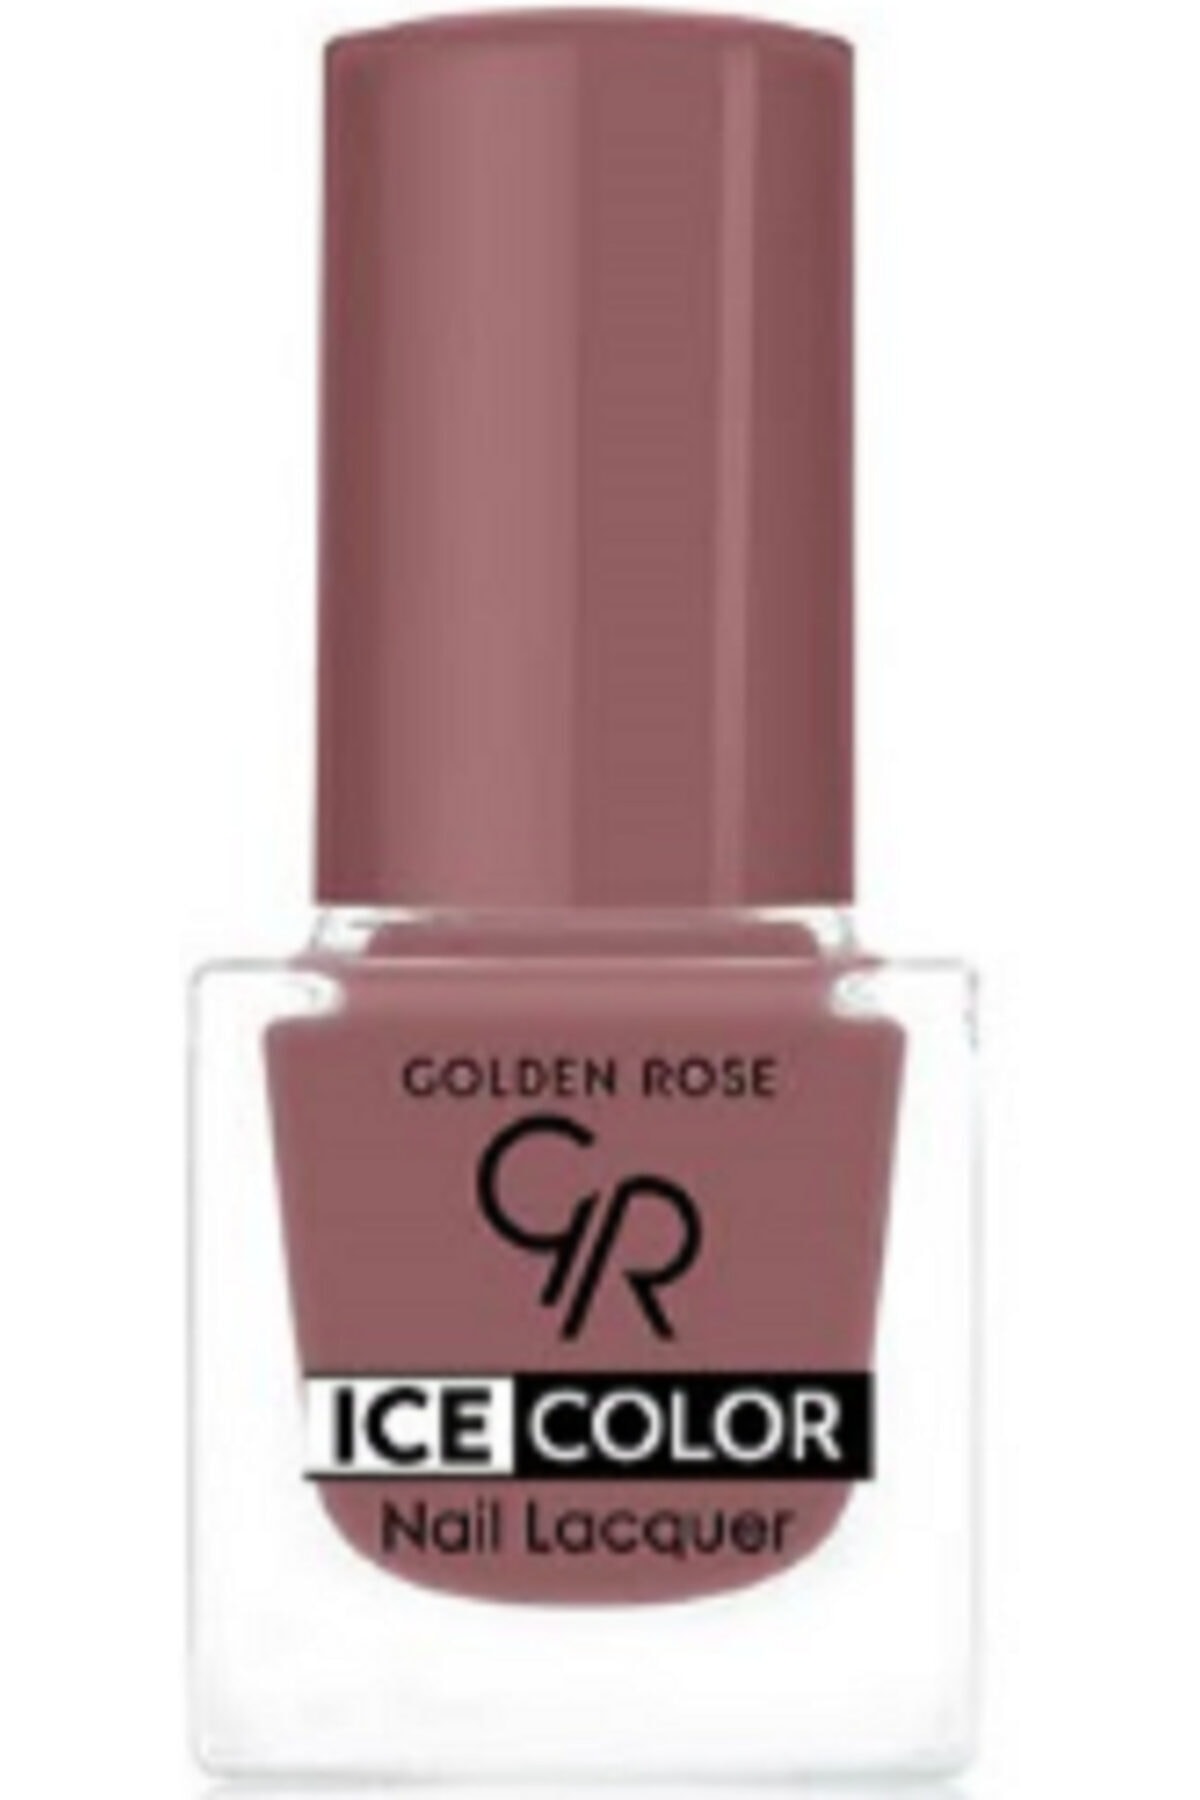 لاک ناخن یخی آیس چیک ICE شماره 138 رنگ صورتی باربی گلدن رز Golden Rose